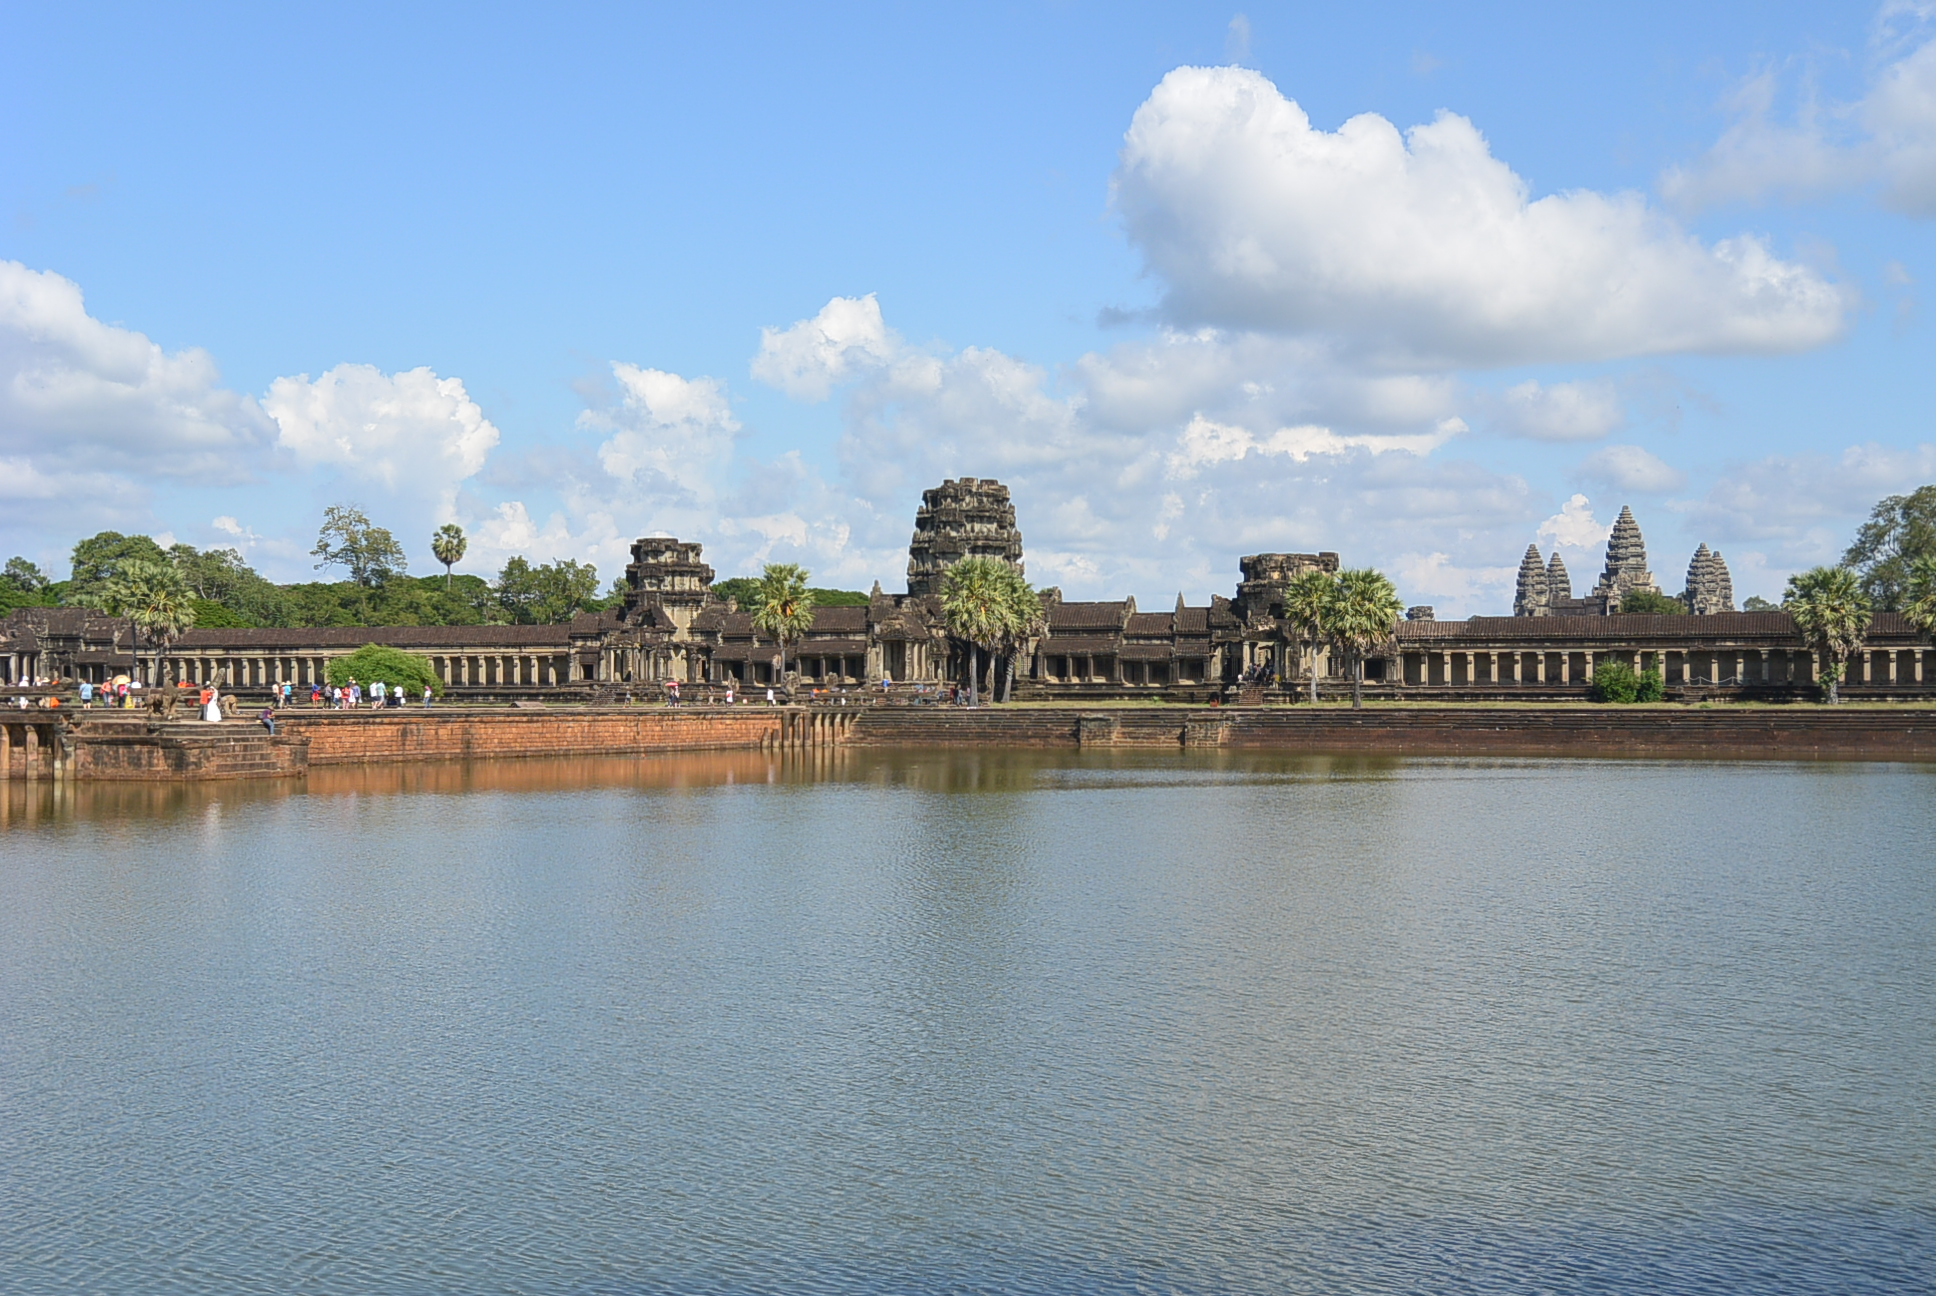 Die Brücke und Aussenmauer von Angkor Wat